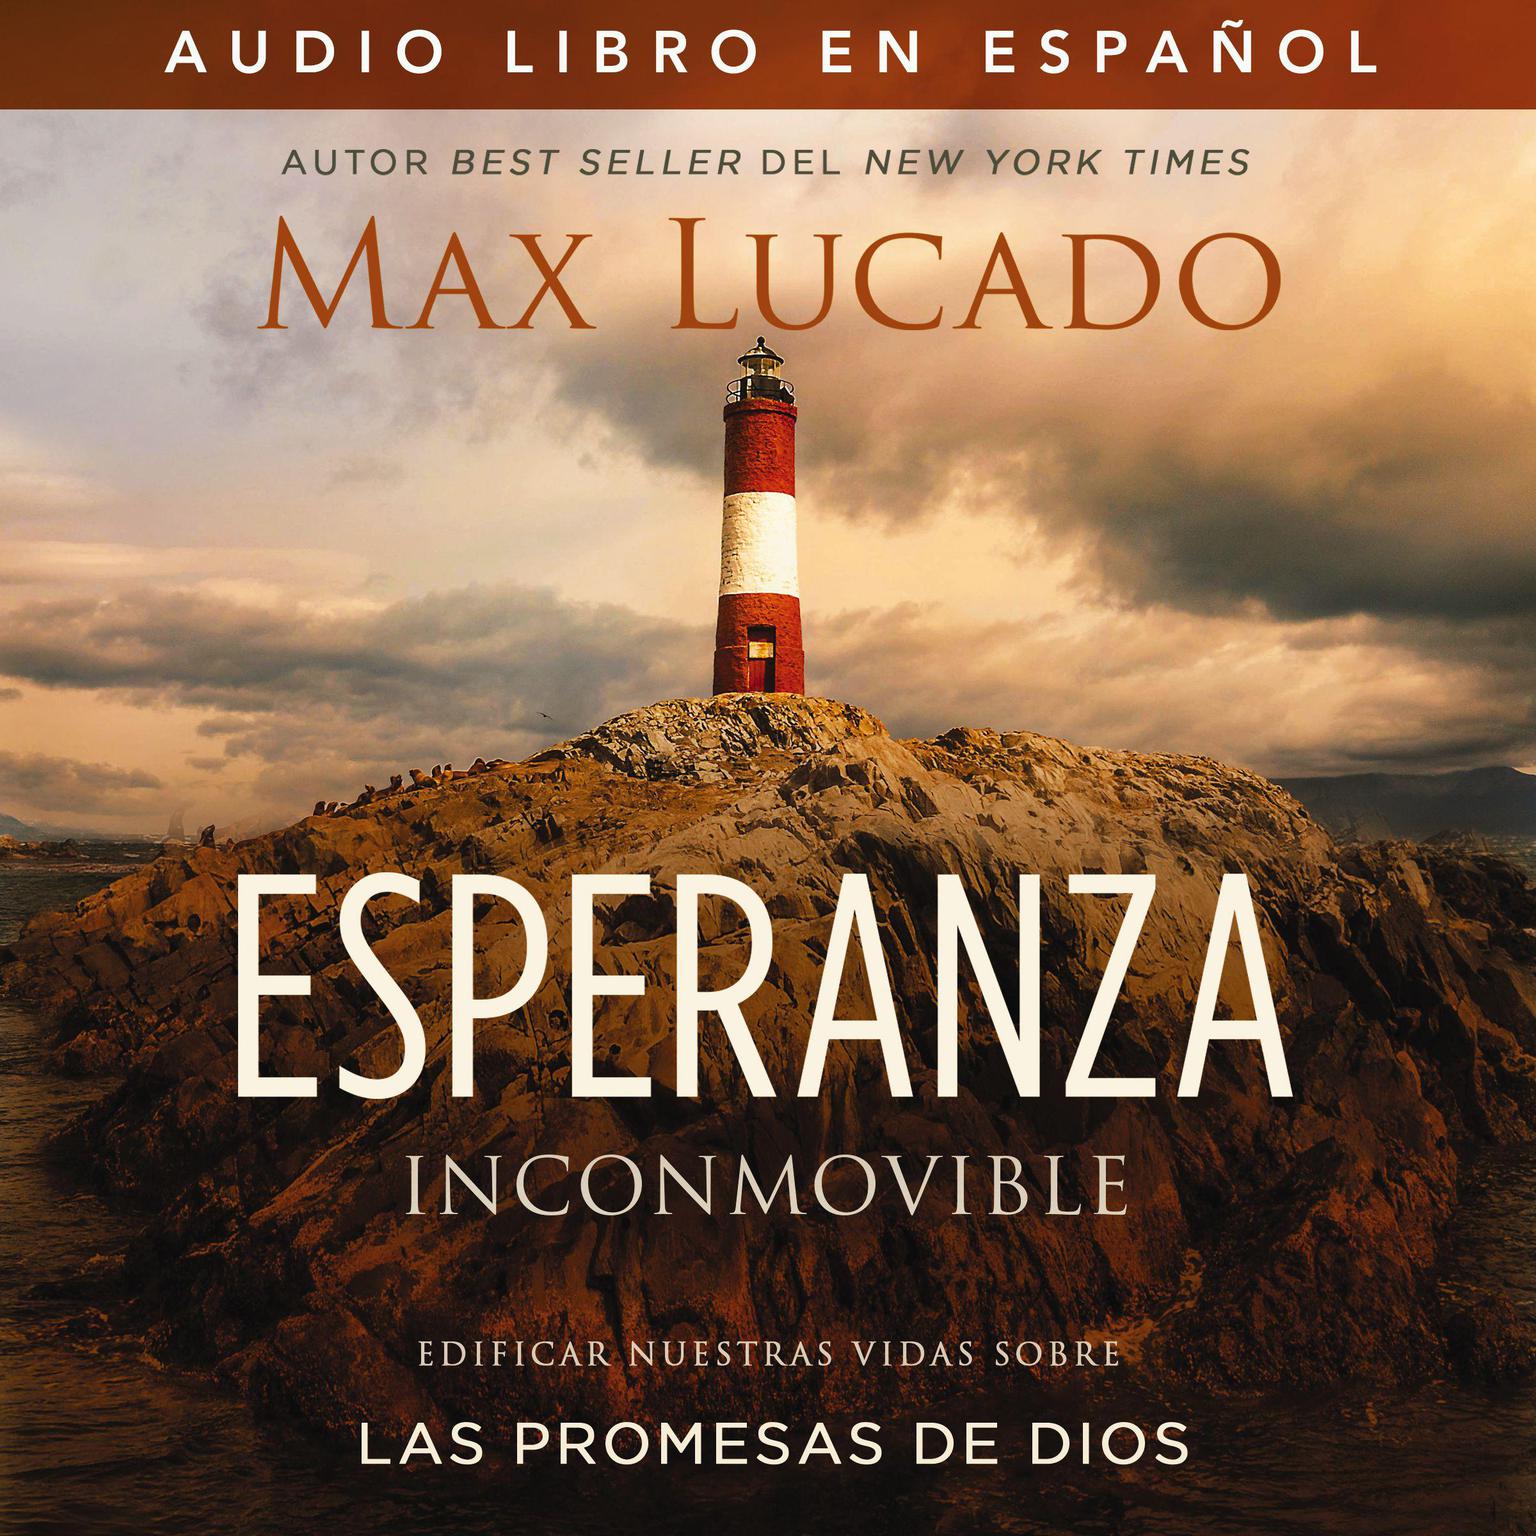 Esperanza inconmovible: Edificar nuestras vidas sobre las promesas de Dios Audiobook, by Max Lucado